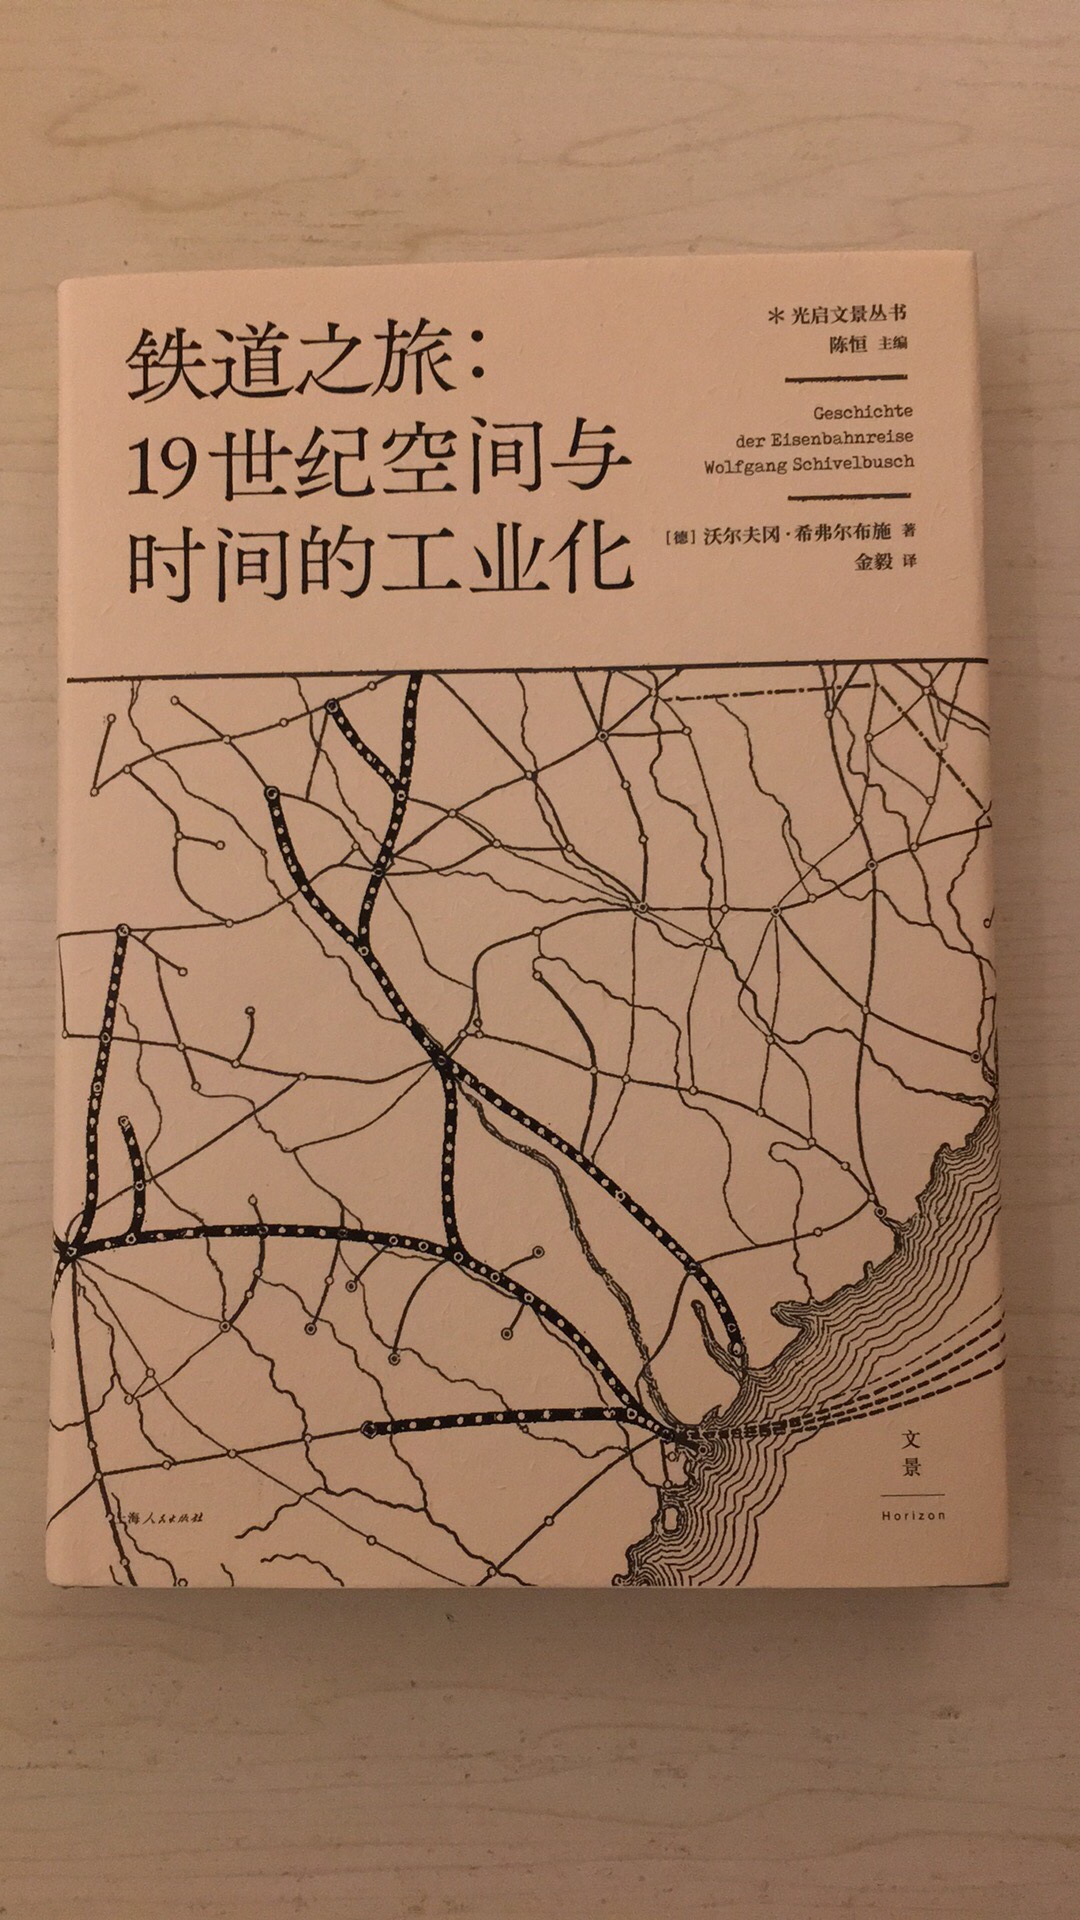 一本很有意思的历史书，讲述了铁路的兴起对城市、对人类社会的巨大影响，读起来饶有趣味。